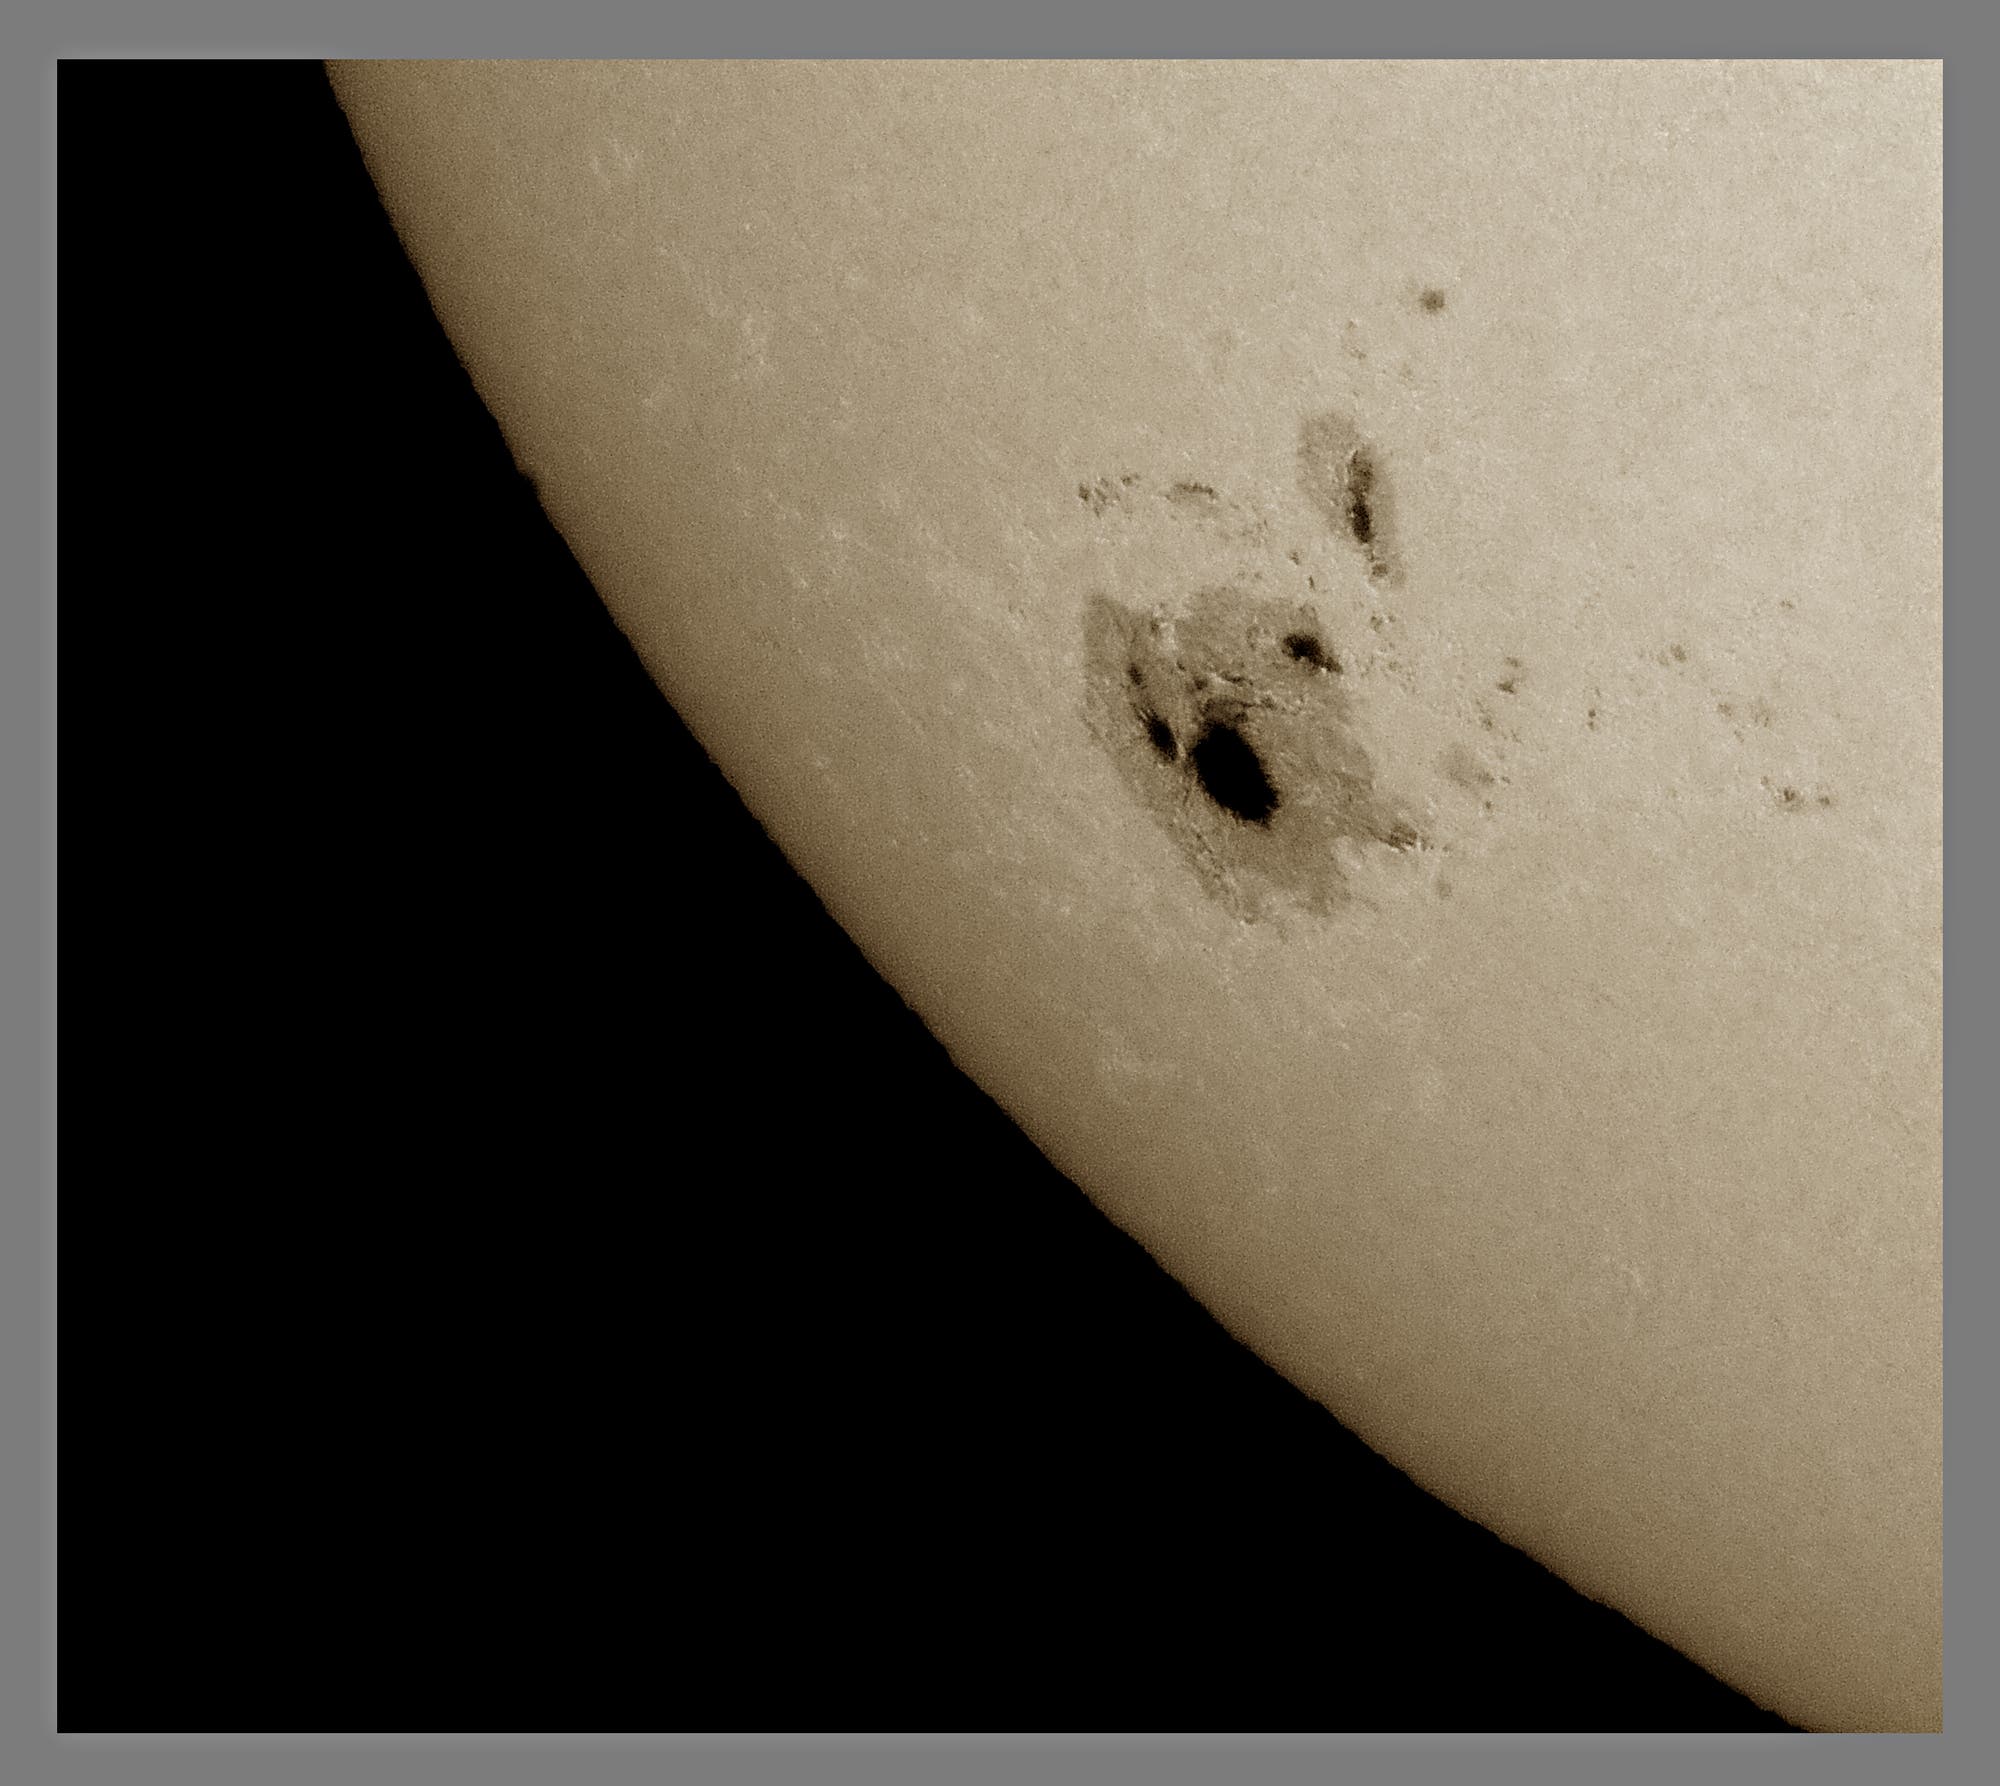 Der große Sonnenfleck AR 12192